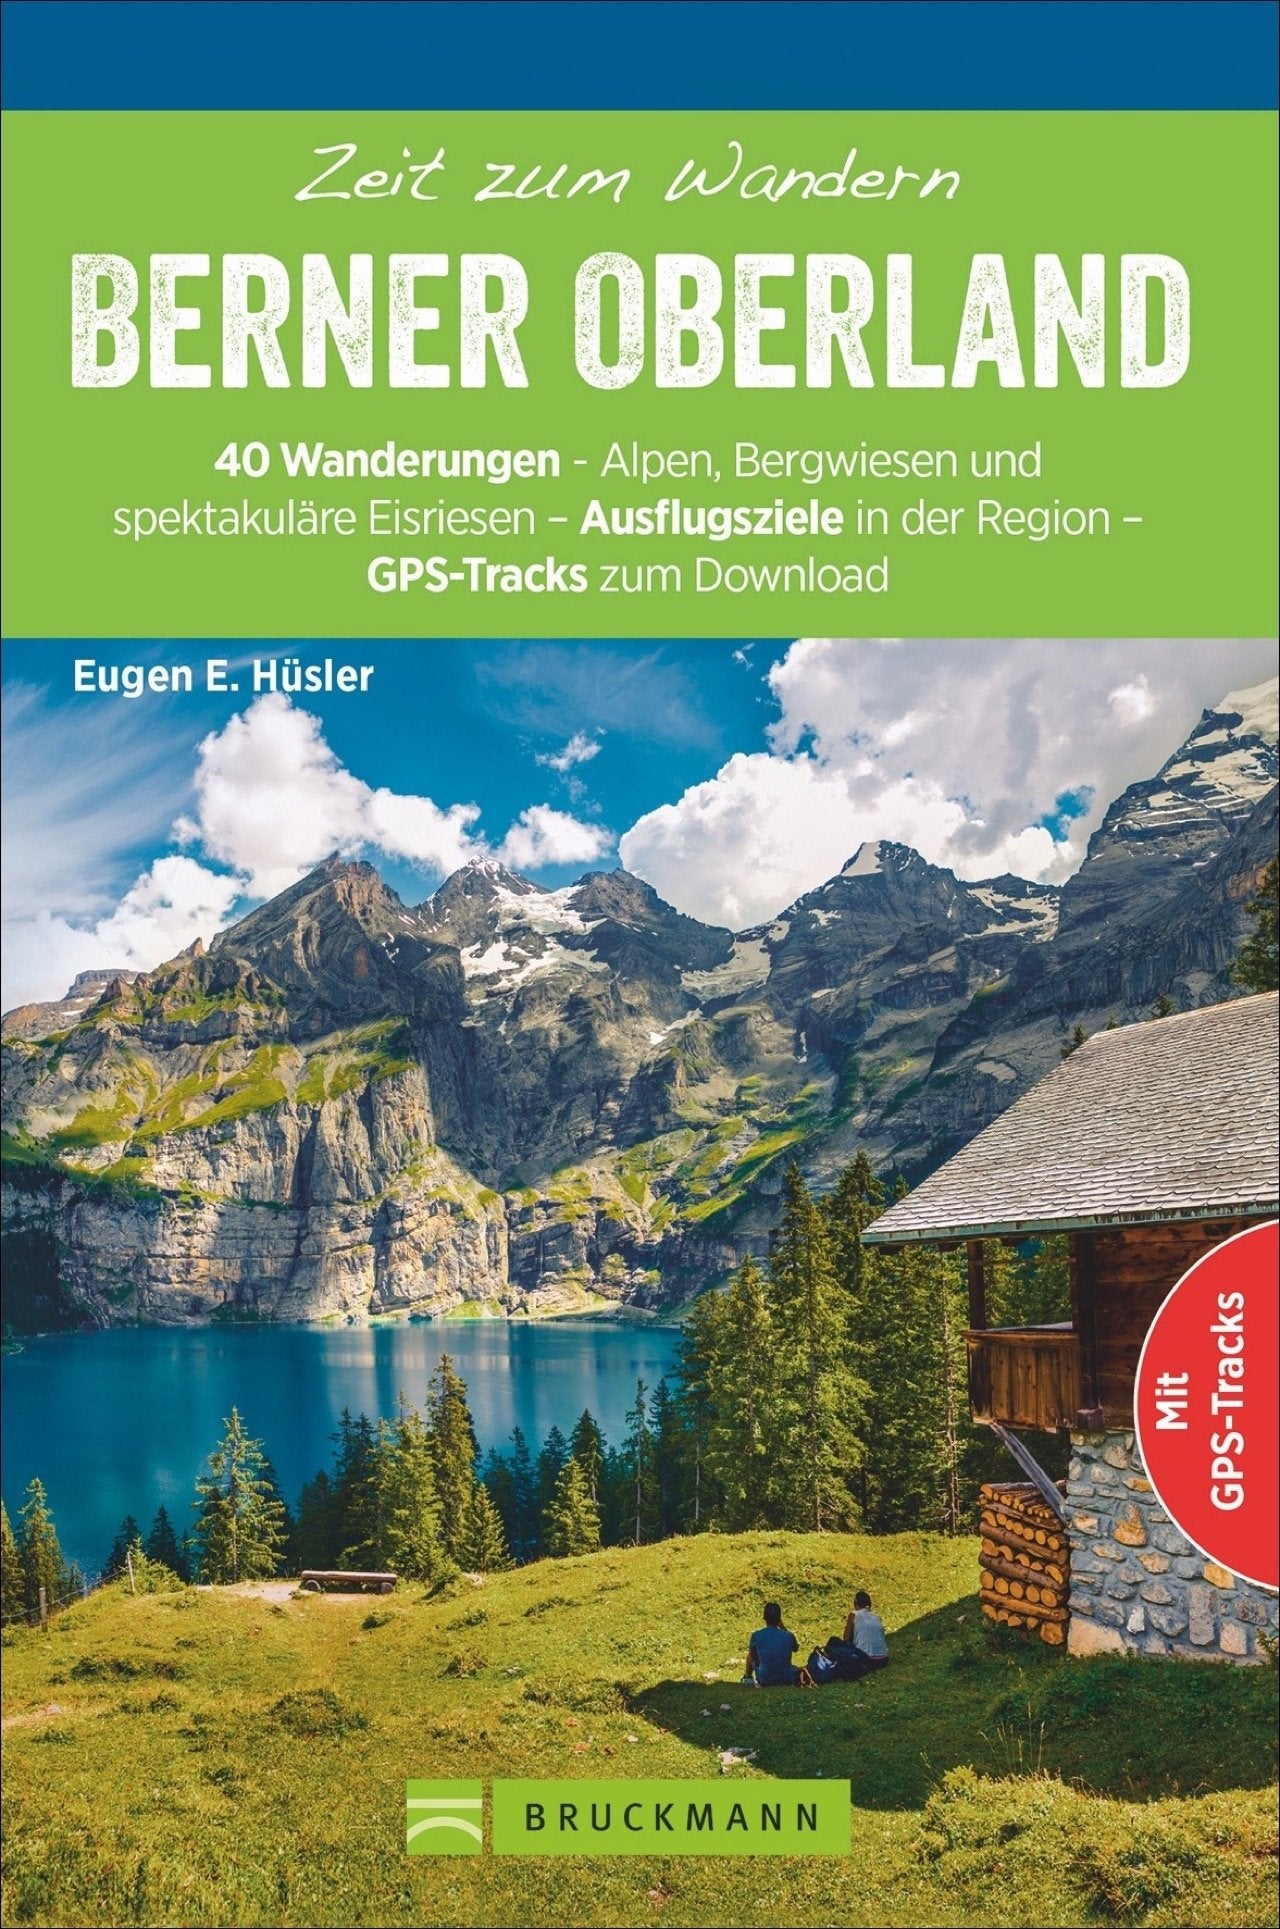 Zeit zum Wandern Berner Oberland - 40 Wanderungen